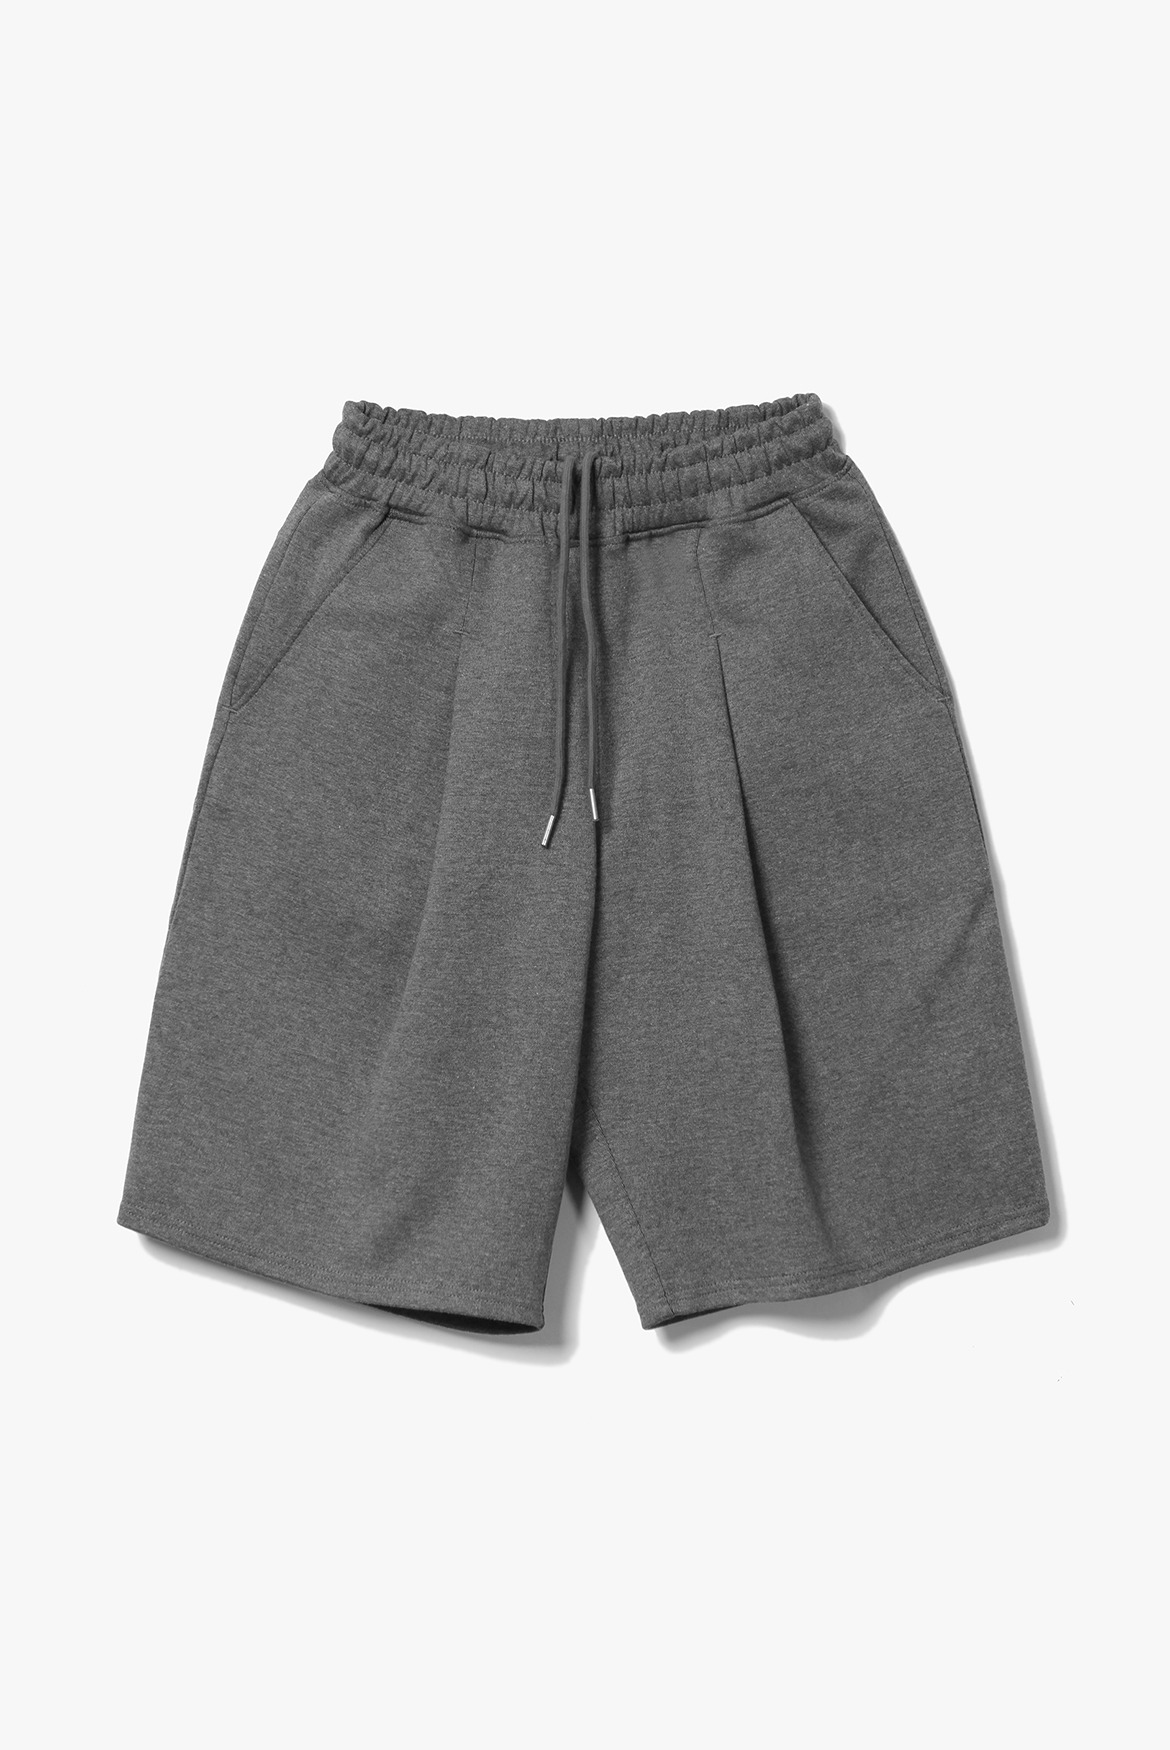 (7월 6일 M,L사이즈만 예약배송) Deep One Tuck Sweat Shorts [Charcoal]